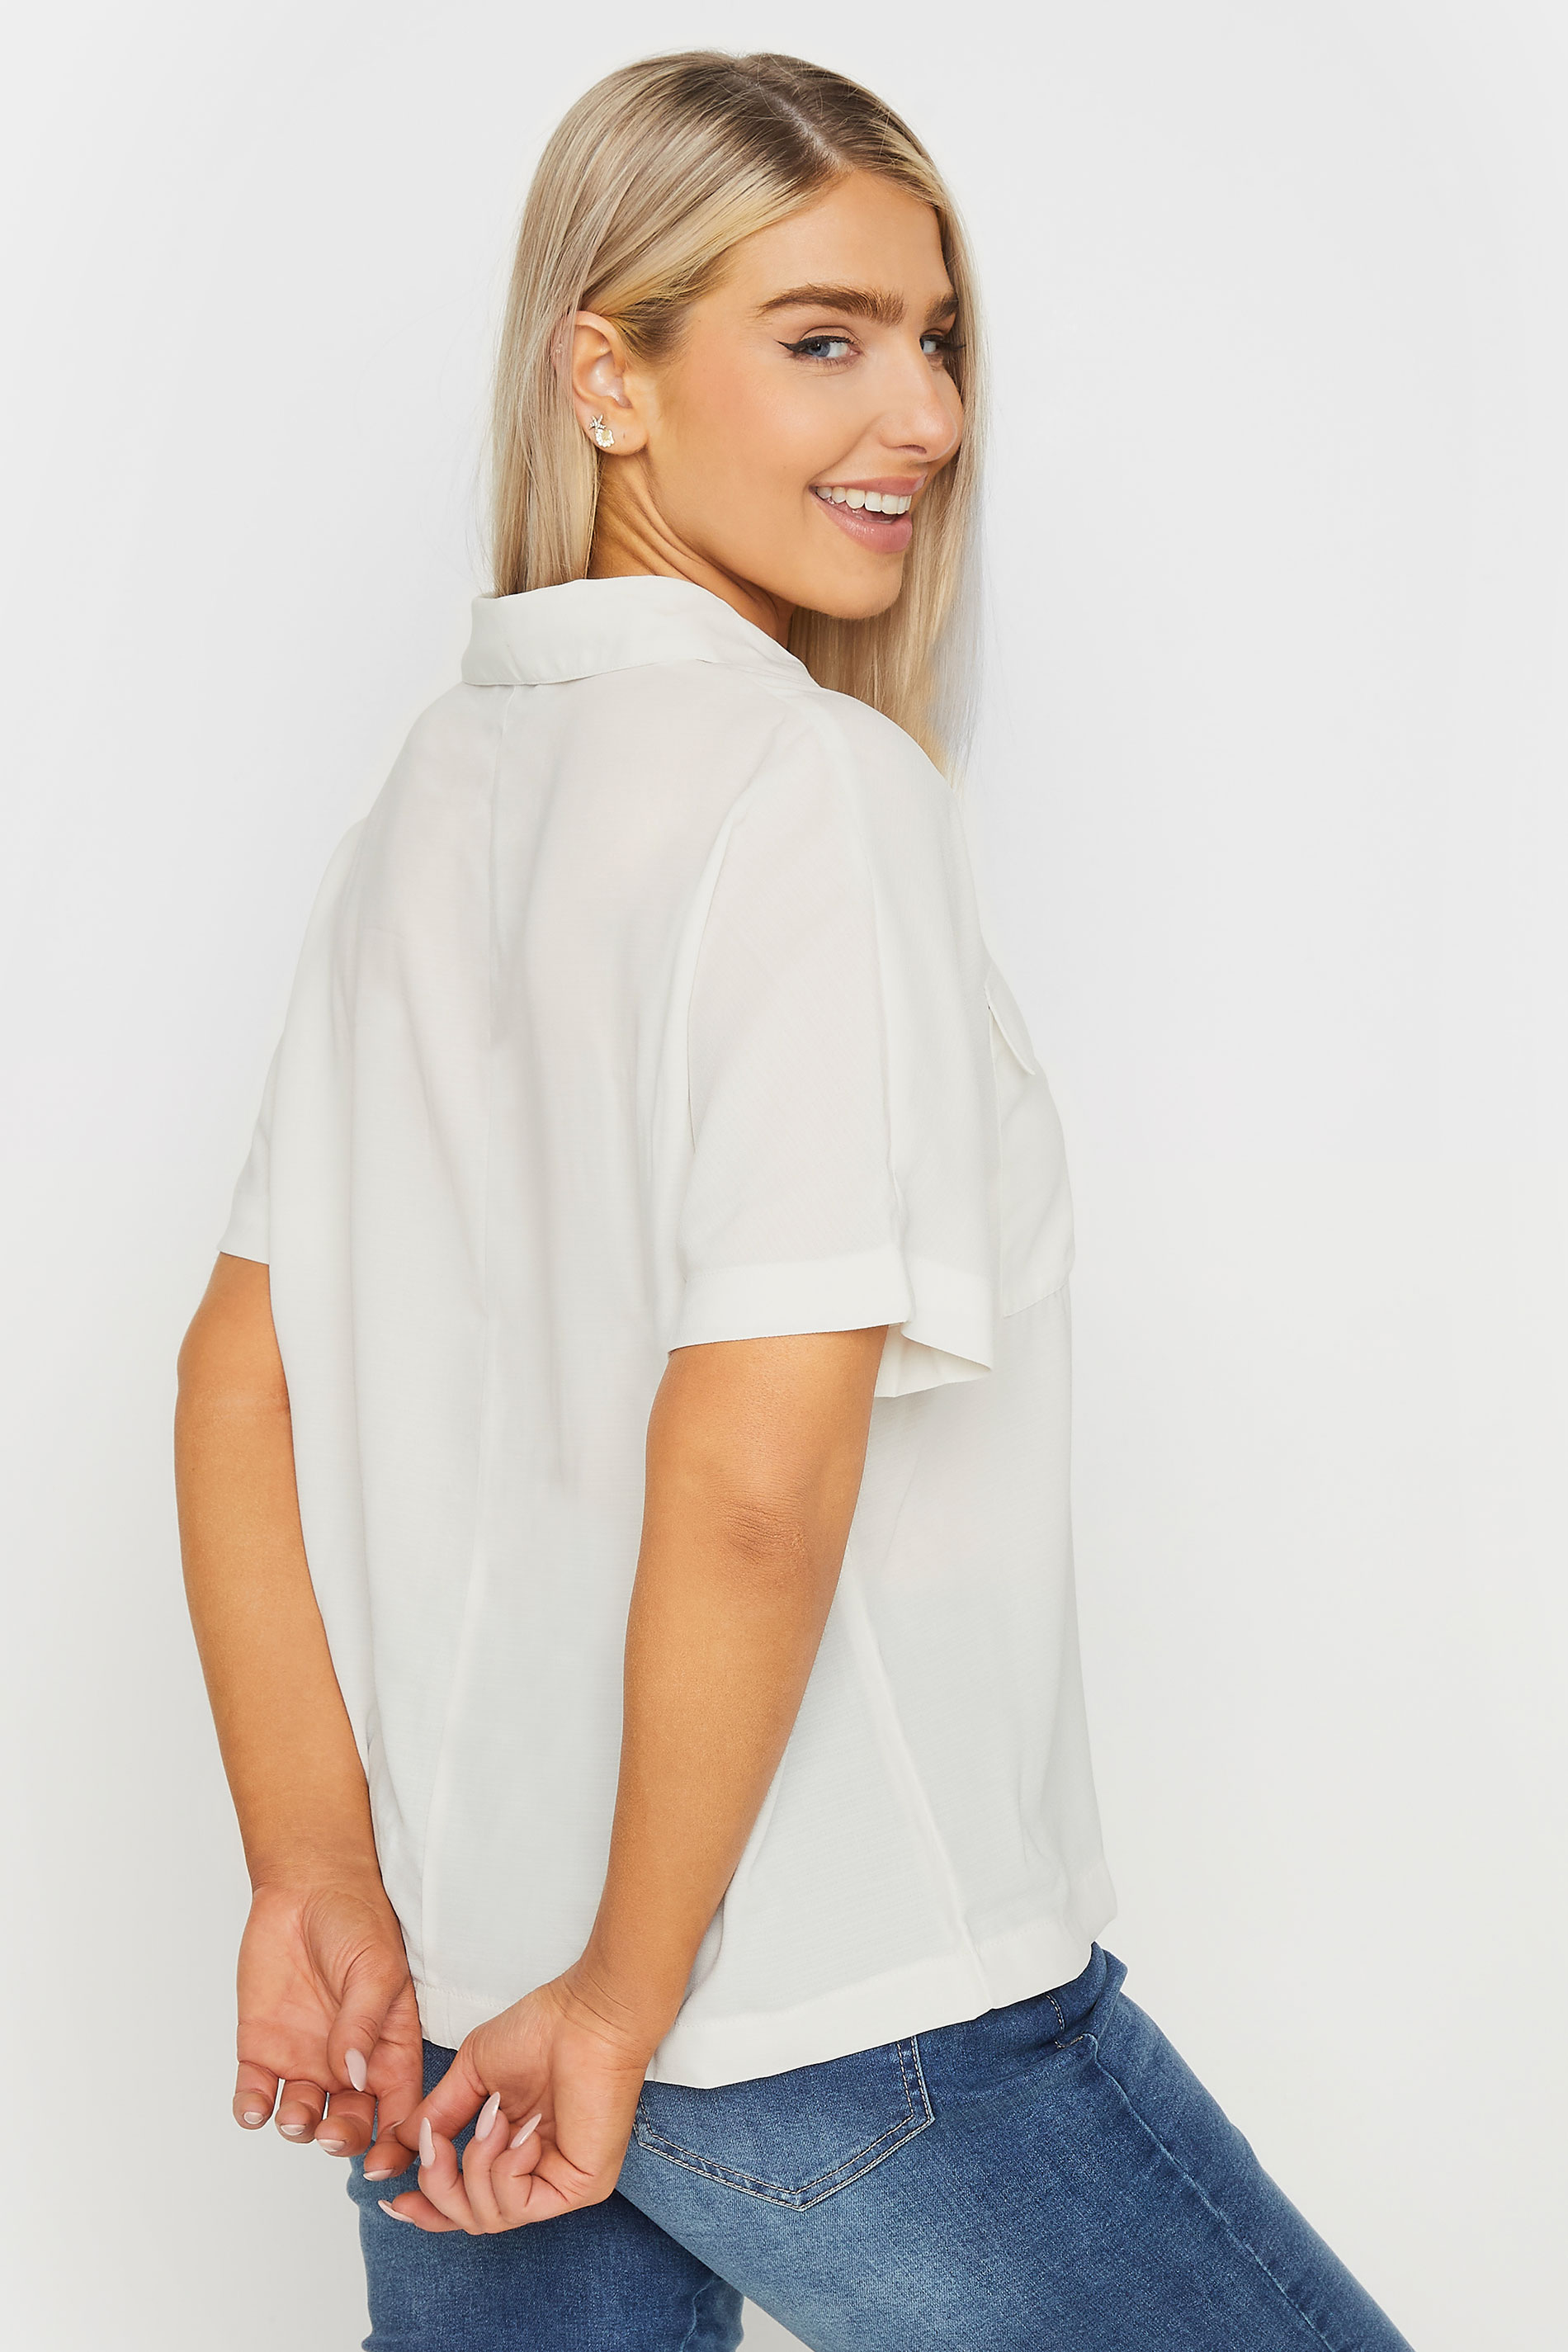 M&Co Ivory White Short Sleeve Utility Shirt | M&Co 3